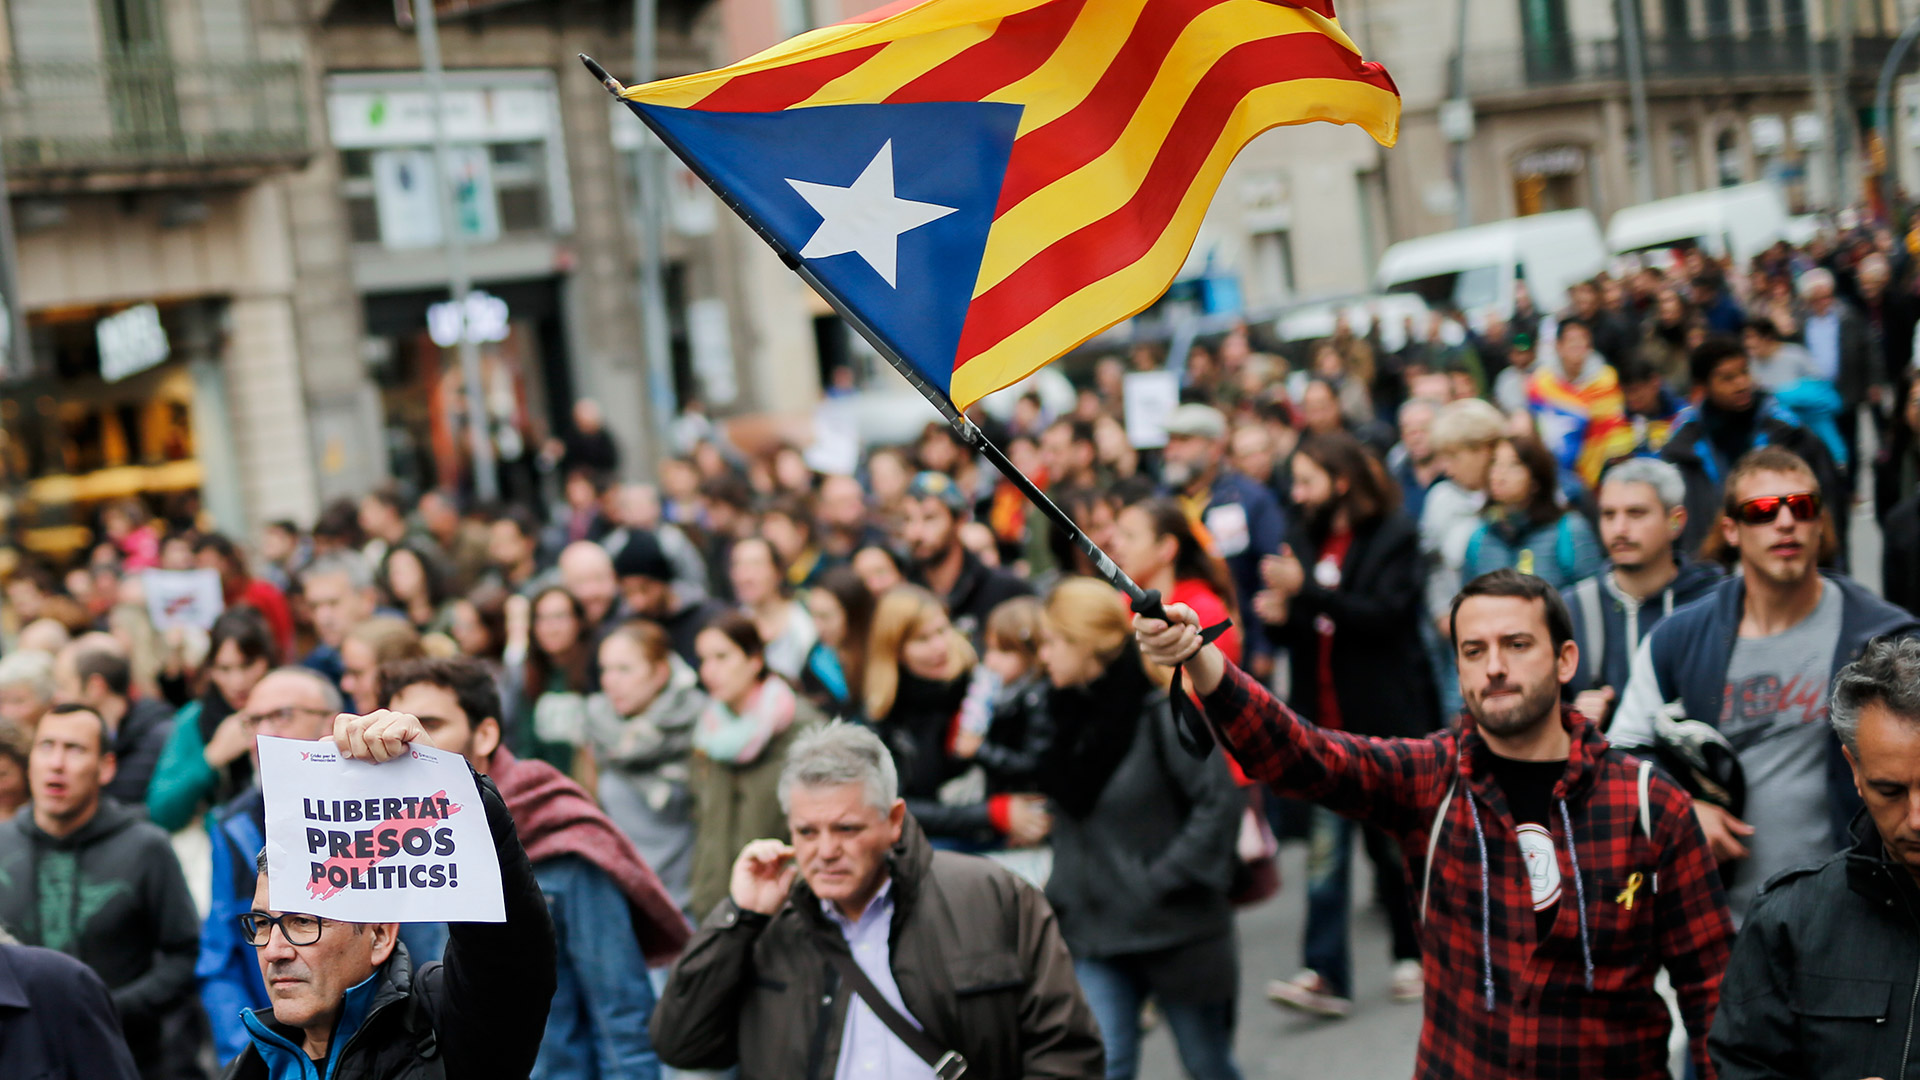 Miles de personas protestan en Barcelona por la "liberación de los presos políticos"